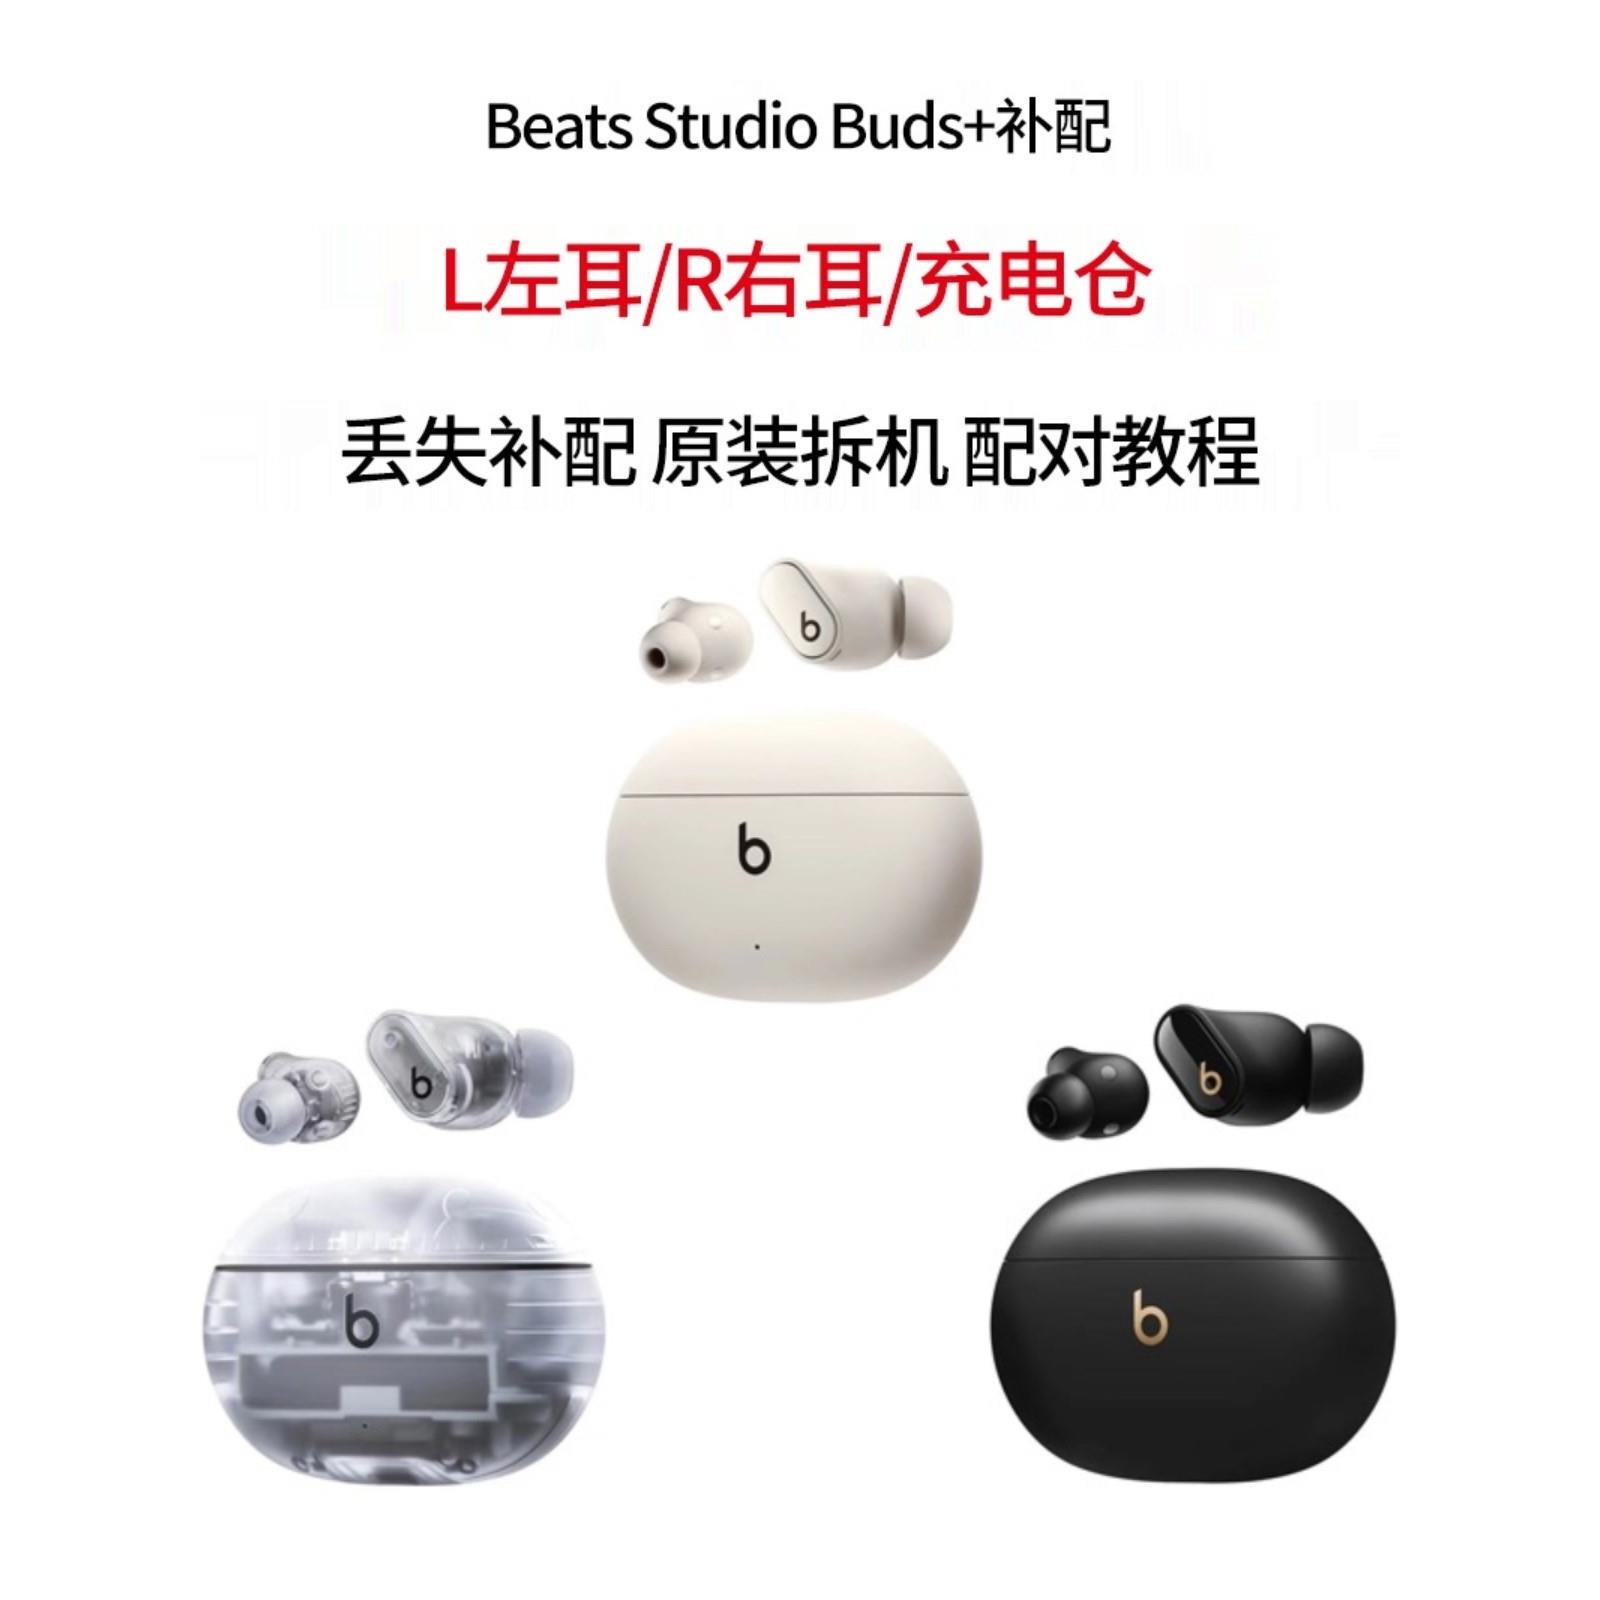 Beats Studio Buds + 真无线降噪耳机左右耳单耳充电仓充